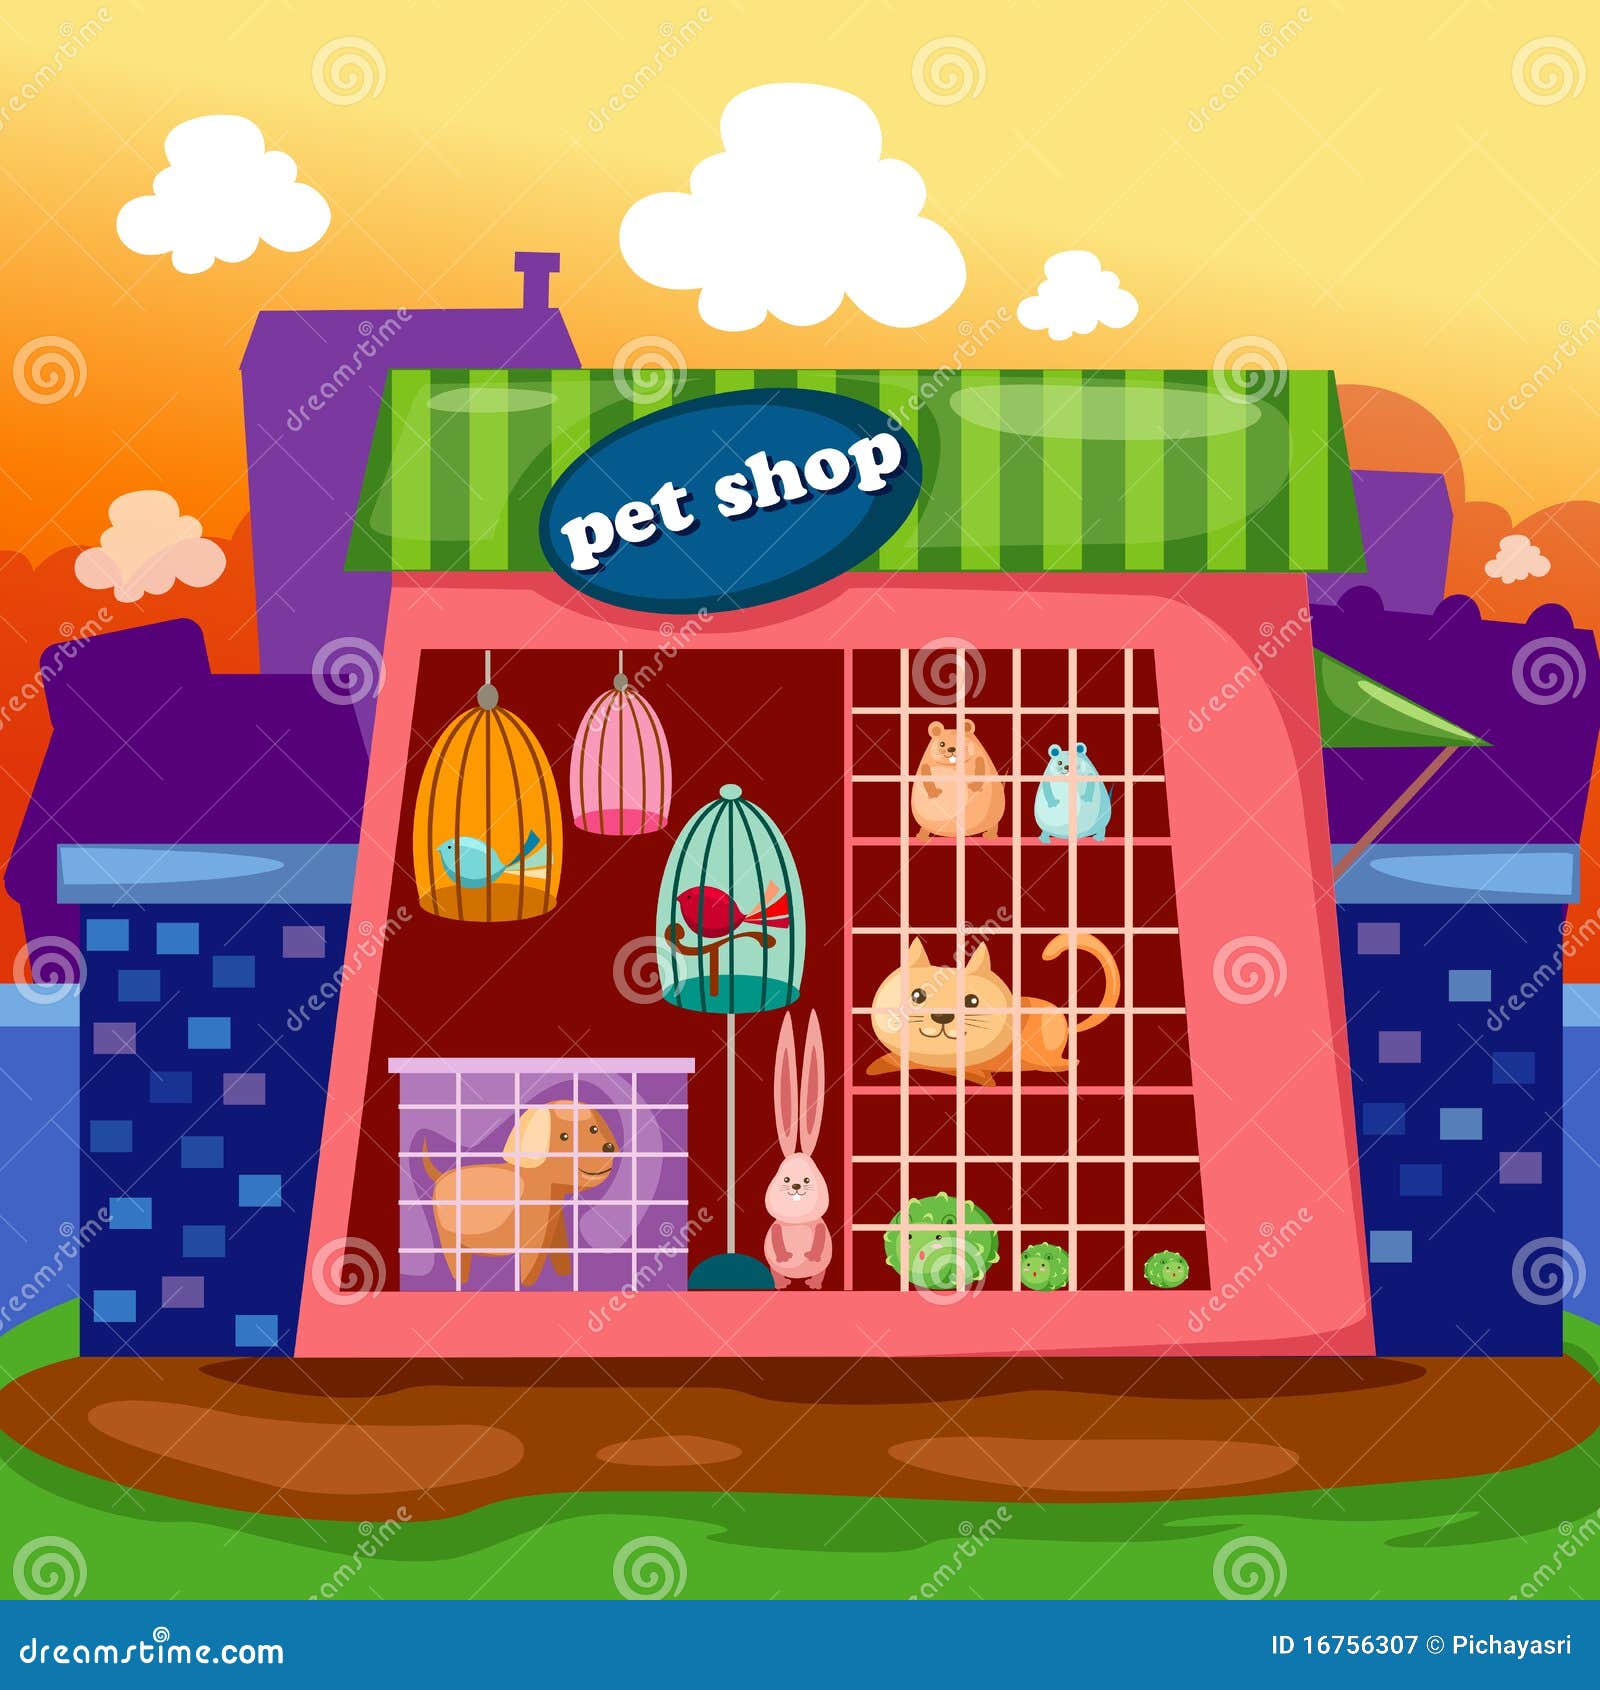 pet shop clipart - photo #11